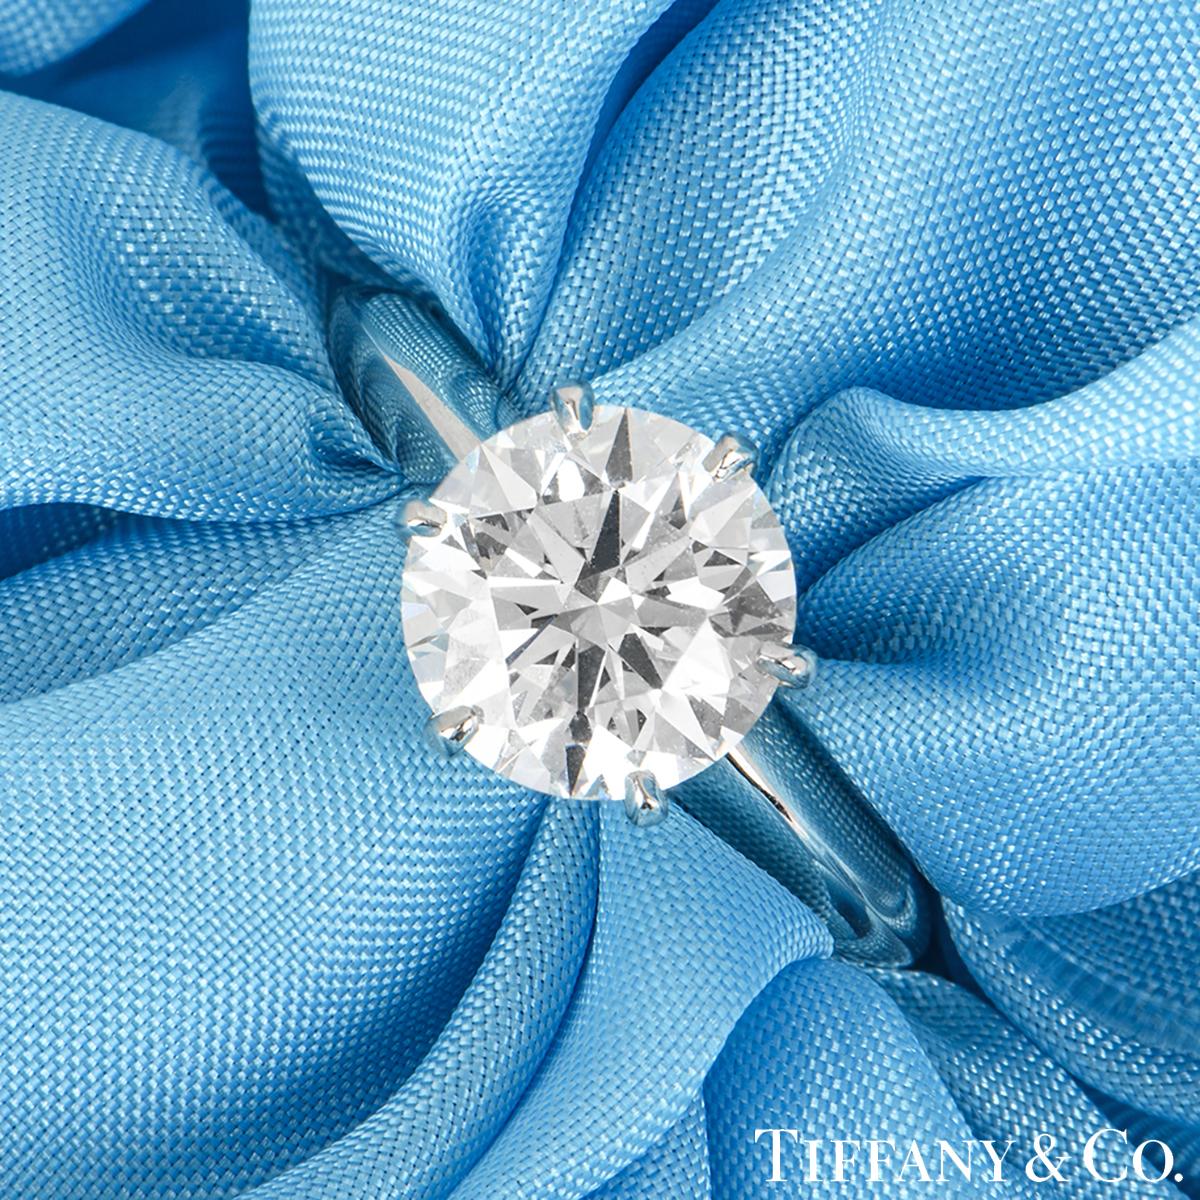 Ein schöner Platin-Diamantring von Tiffany & Co. aus der The Setting Collection. Der Ring besteht aus einem runden Diamanten im Brillantschliff in einer 6-Krallen-Fassung mit einem Gewicht von 2,13 ct, Farbe H und Reinheit VVS1, wie aus dem jüngsten